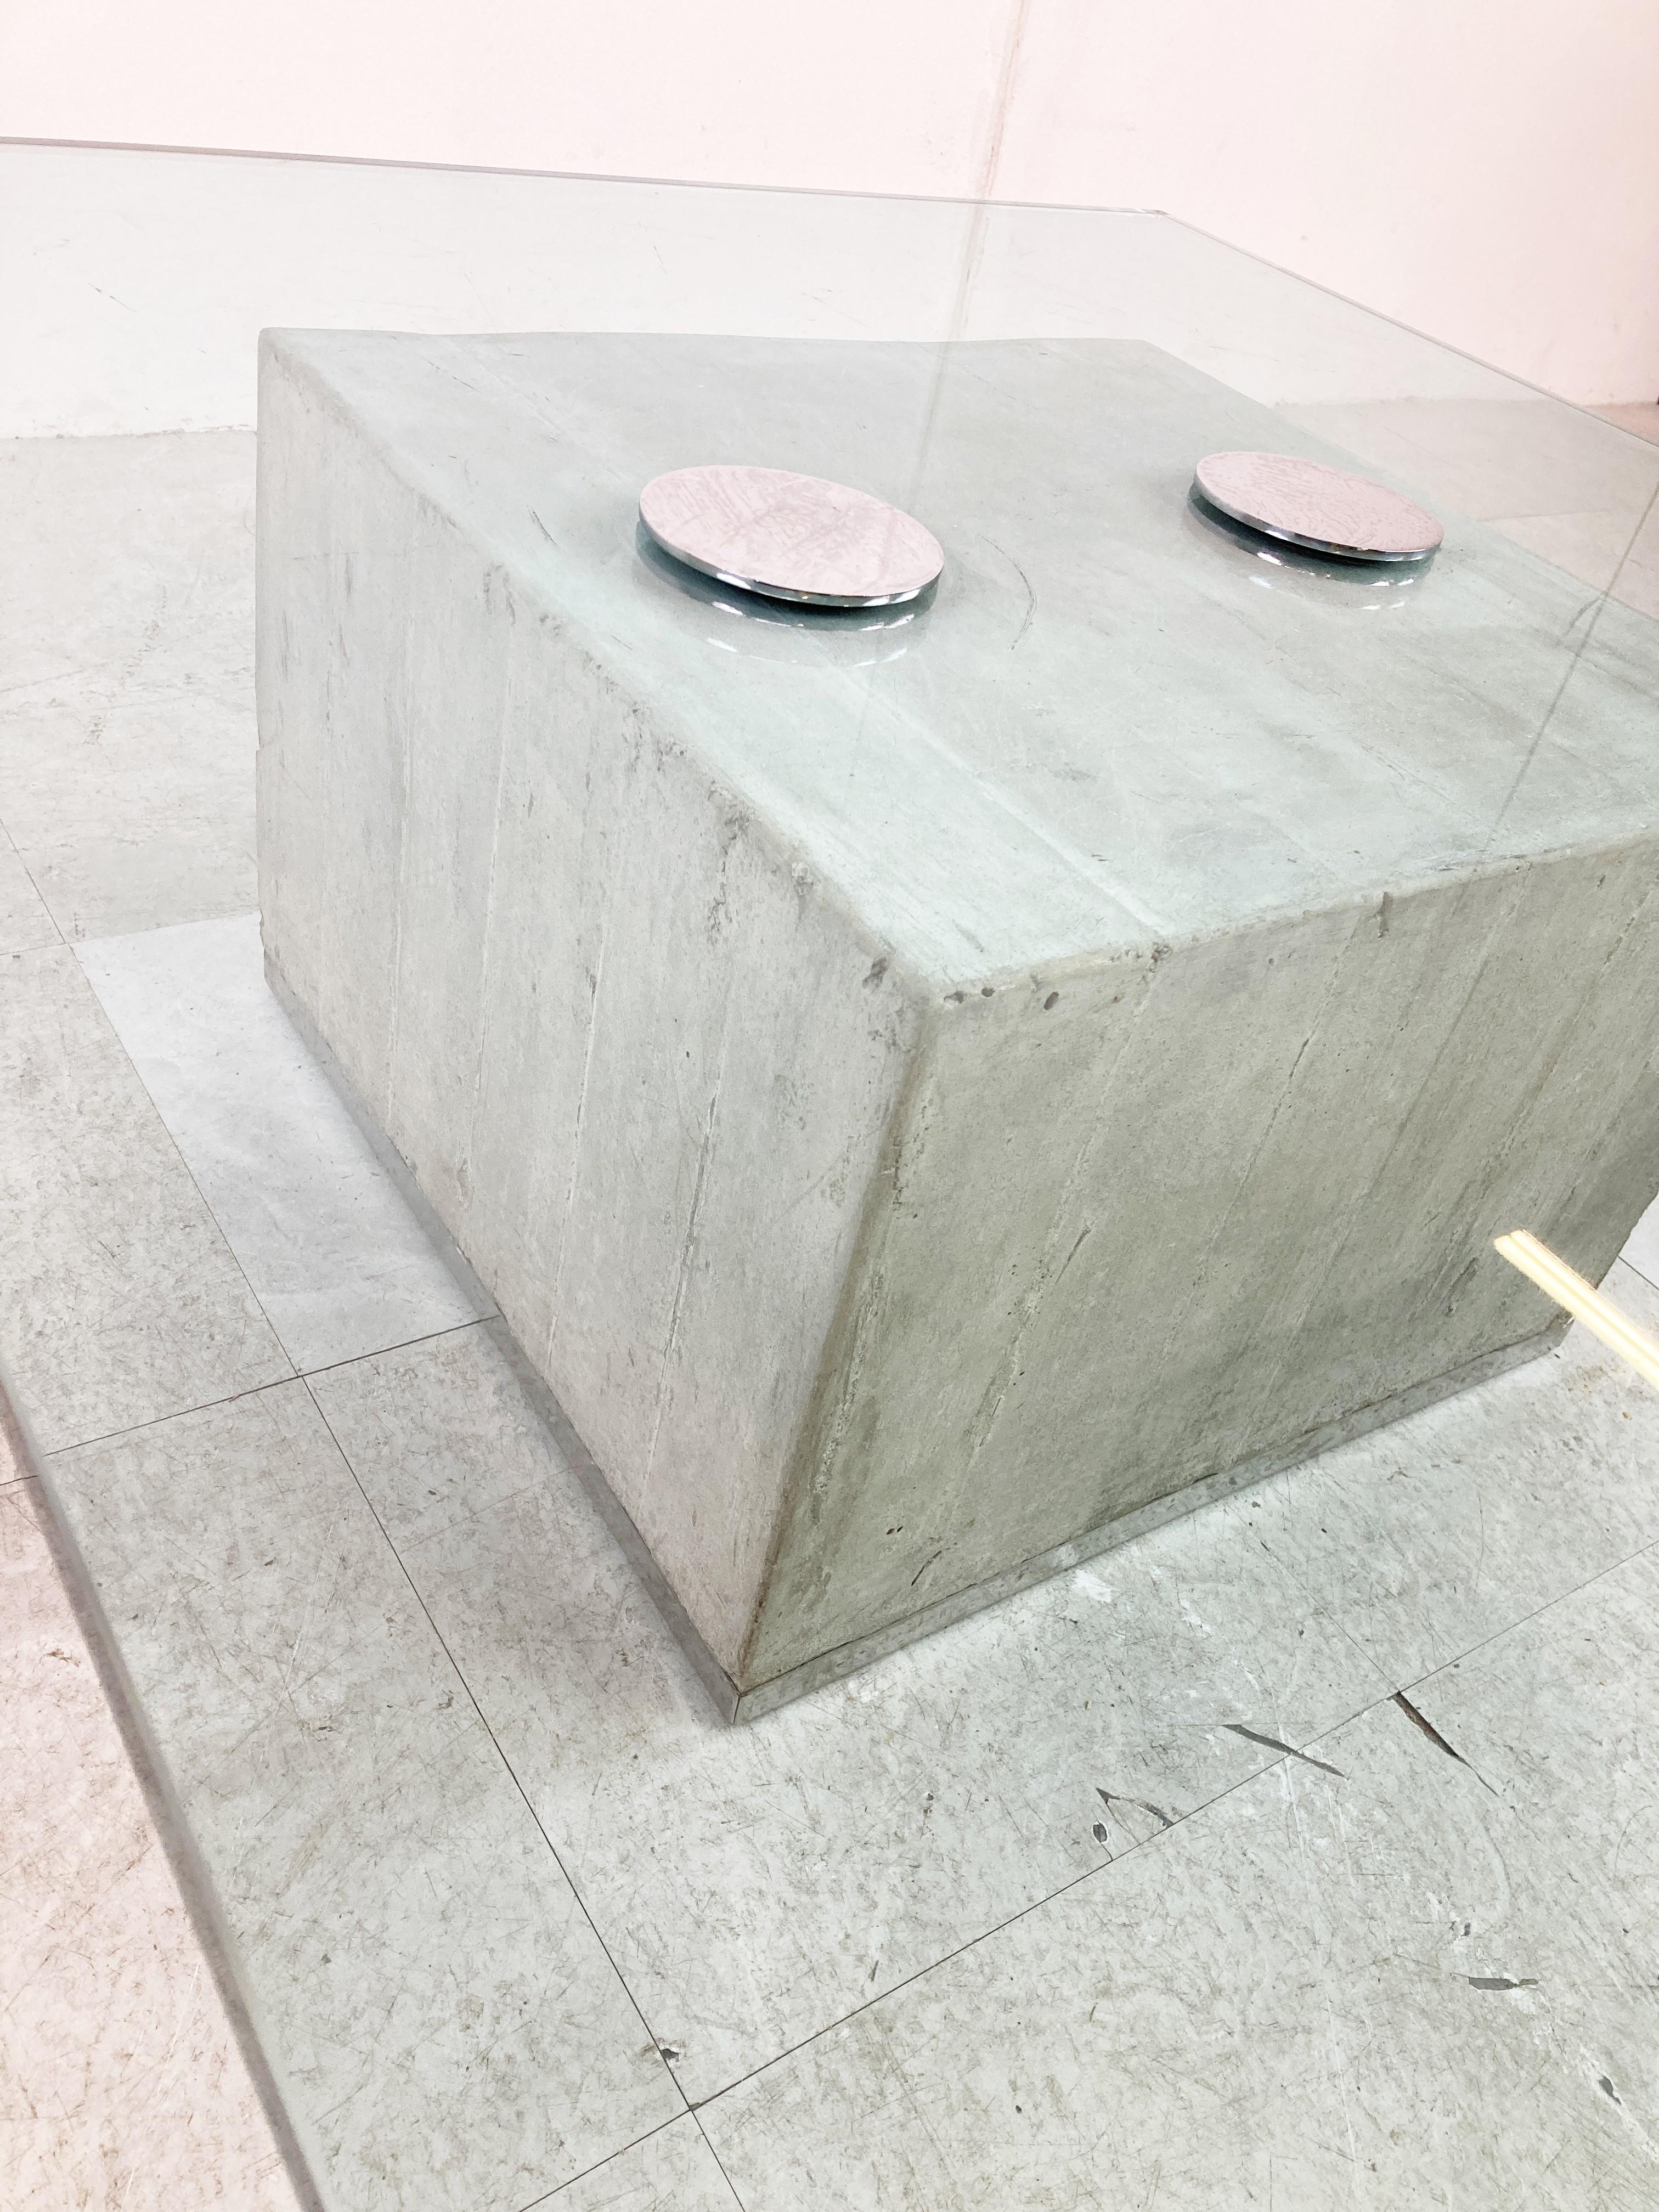 Couchtisch aus Beton und Chrom mit dicker Glasplatte. - Modell Sapo.

Entworfen von Sergio und Giorgio Saporiti für Saporiti.

Dieser Couchtisch aus Beton ist ein schöner Blickfang und dank des nicht zentrierten Tischfußes einzigartig. 

Der Deckel